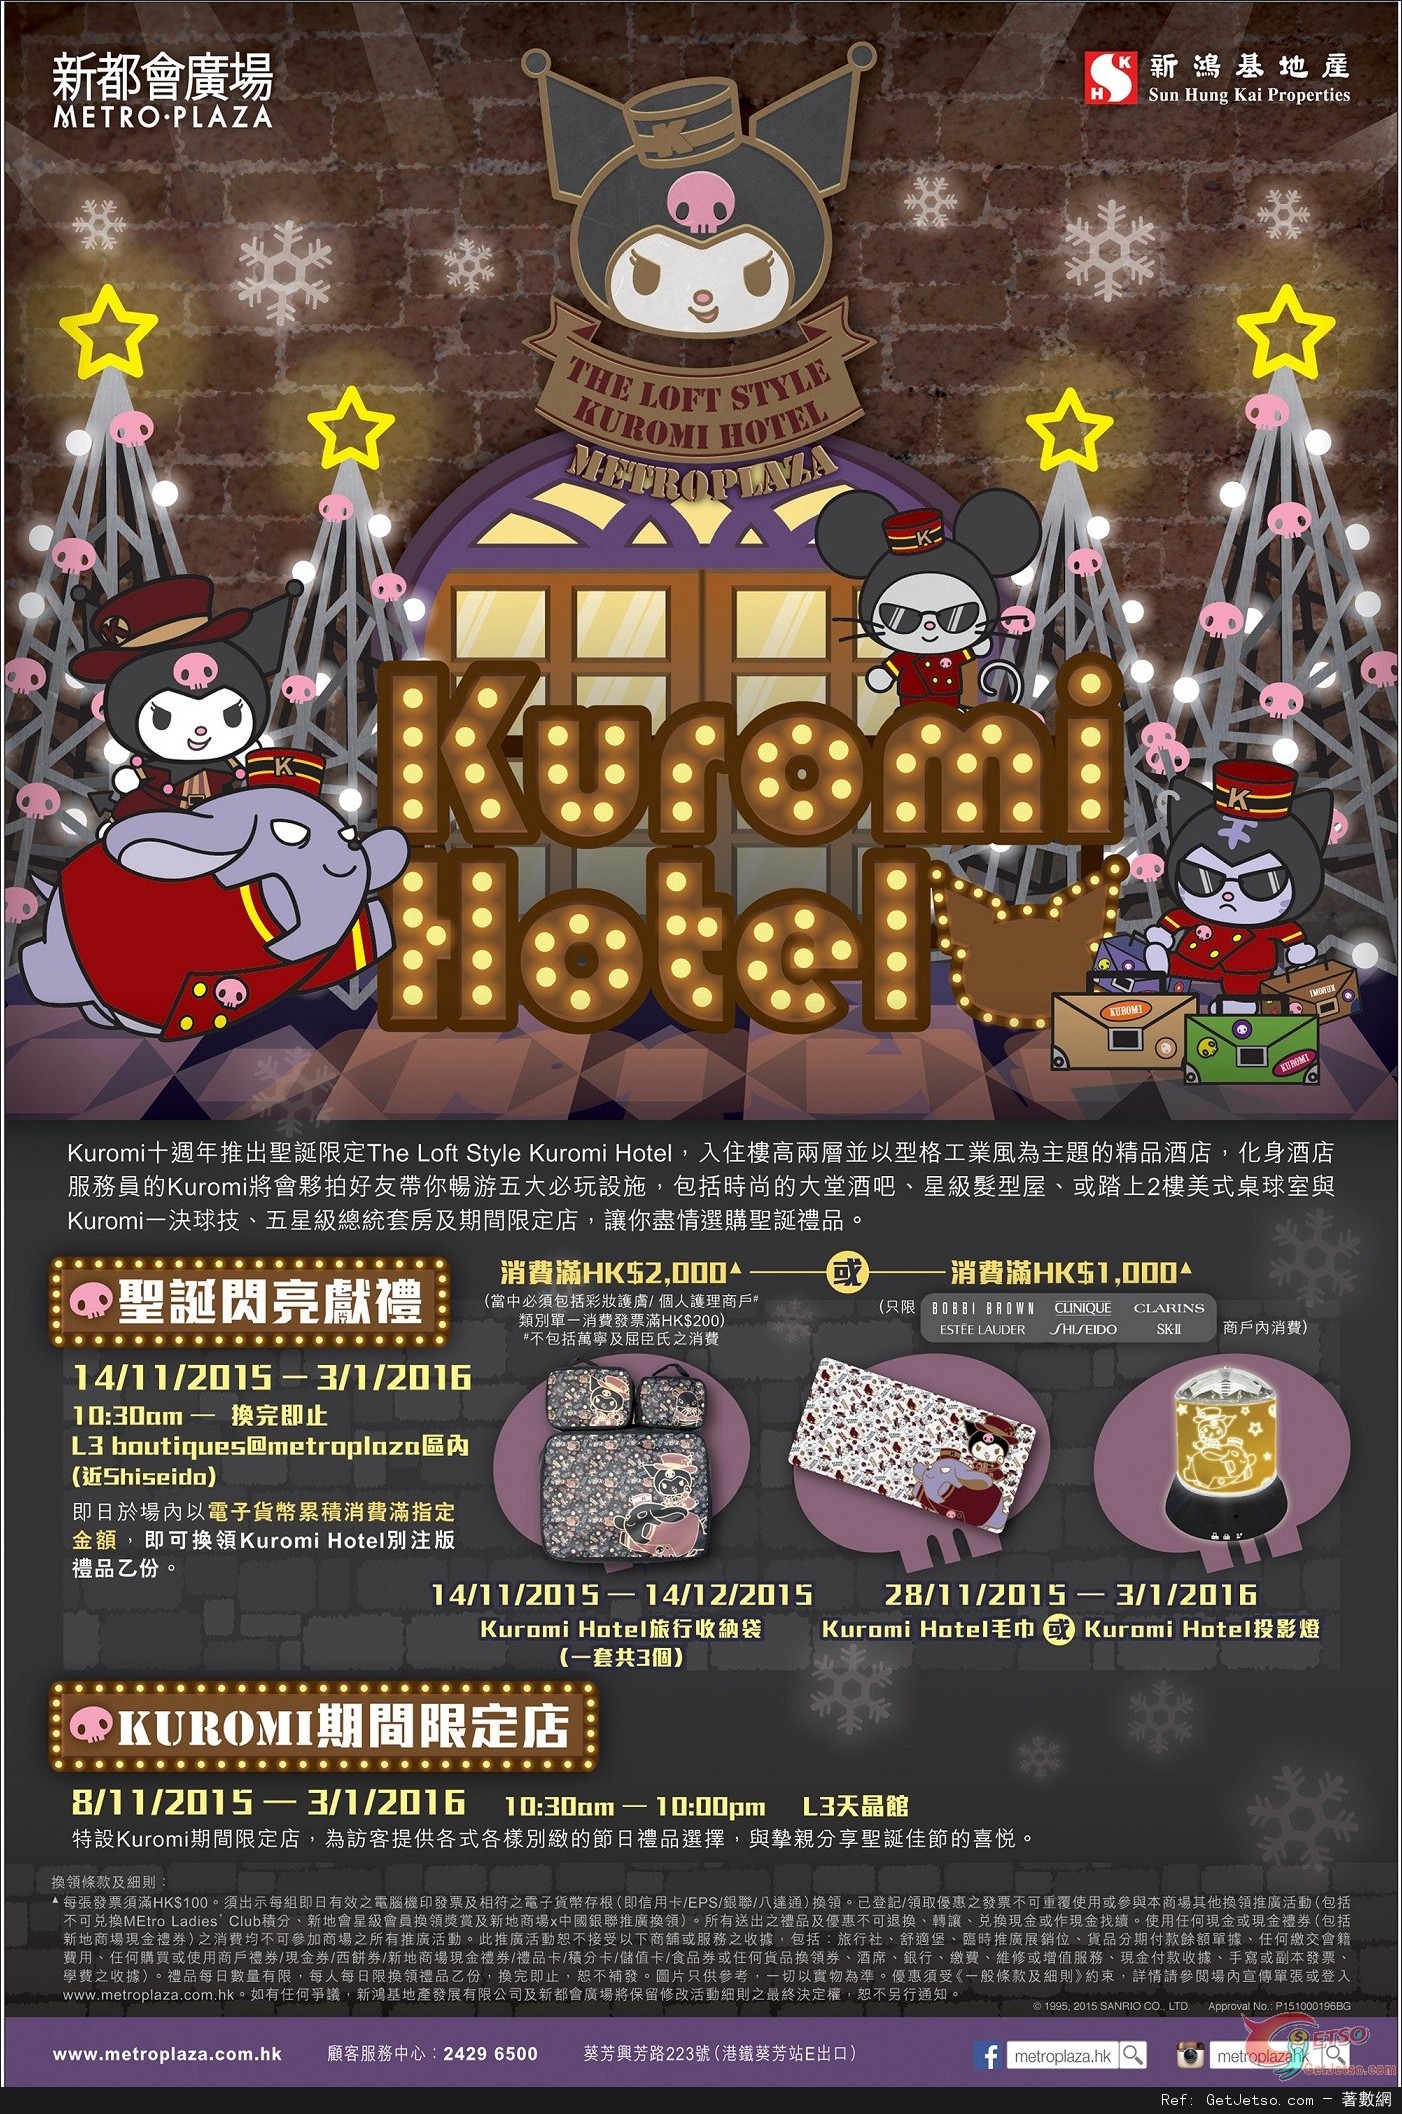 新都會廣場聖誕「The Loft Style Kuromi Hotel」+期間限定精品店(至16年1月3日)圖片1